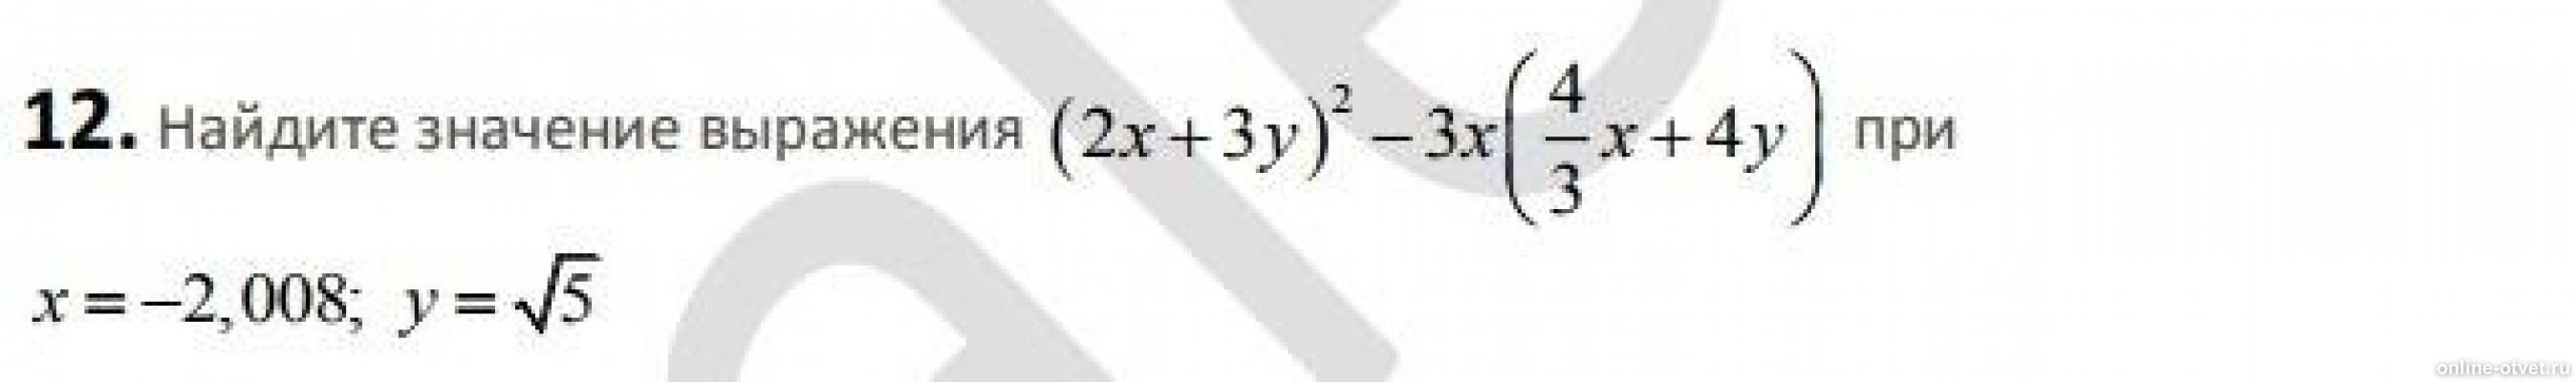 Корень x 9 16. Корень 1/16 x6 y4 при x 2 y 5. Найдите значения выражения x/x+y при x 2 y 8. X+ корень из x 2+8x +16 при x - 4. Корень из 4x6y4 при x3 y5.